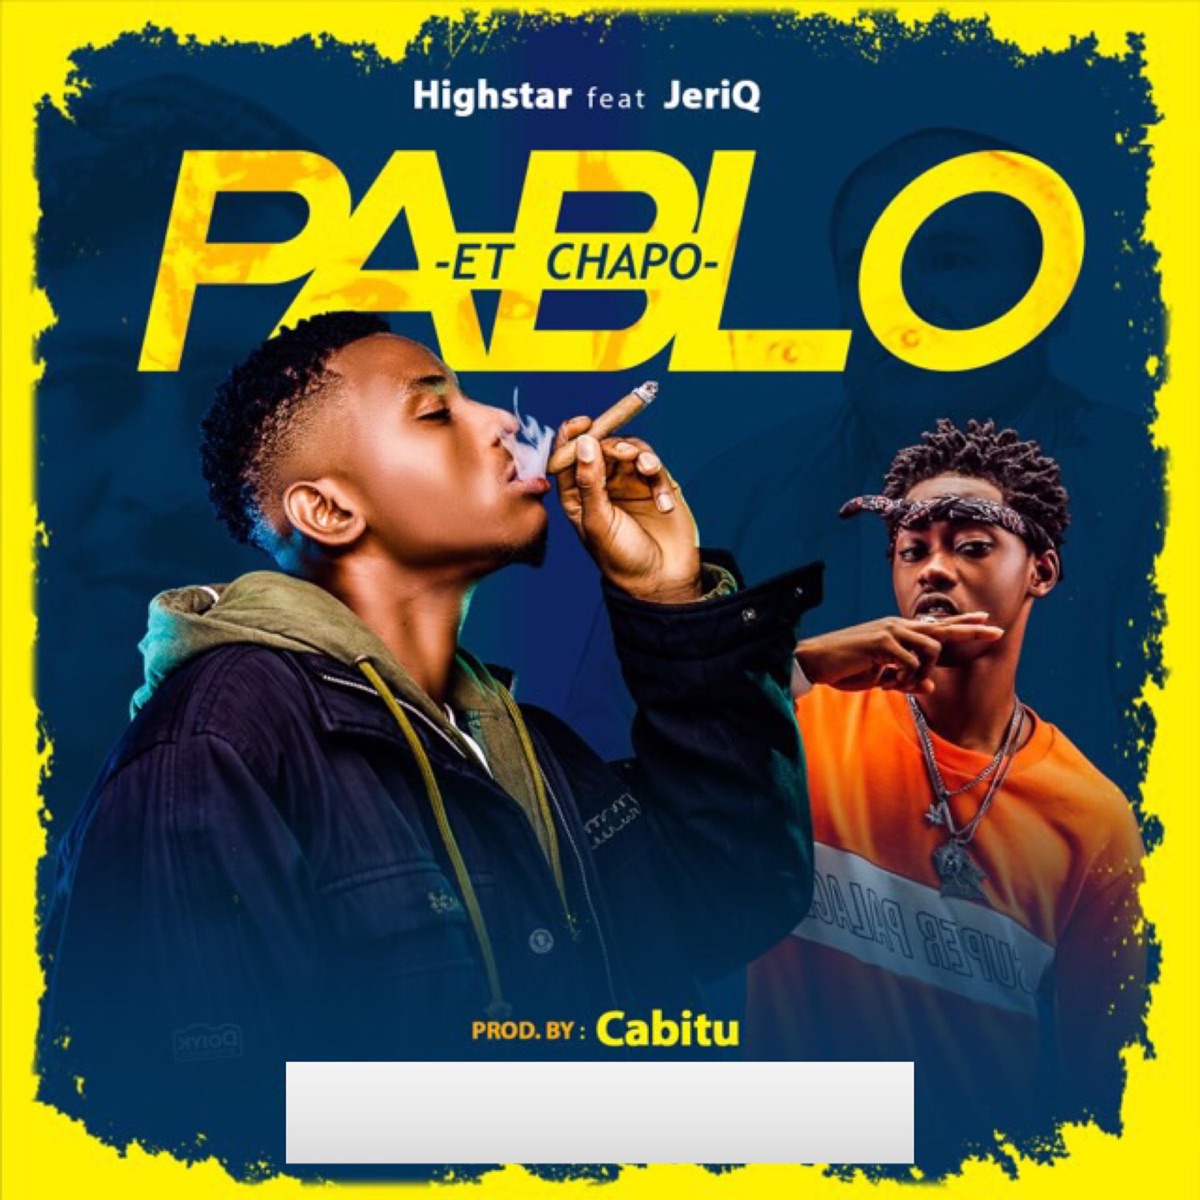 Pablo et Chapo (feat. Jeriq) - Single by Highstarlavista on Apple Music